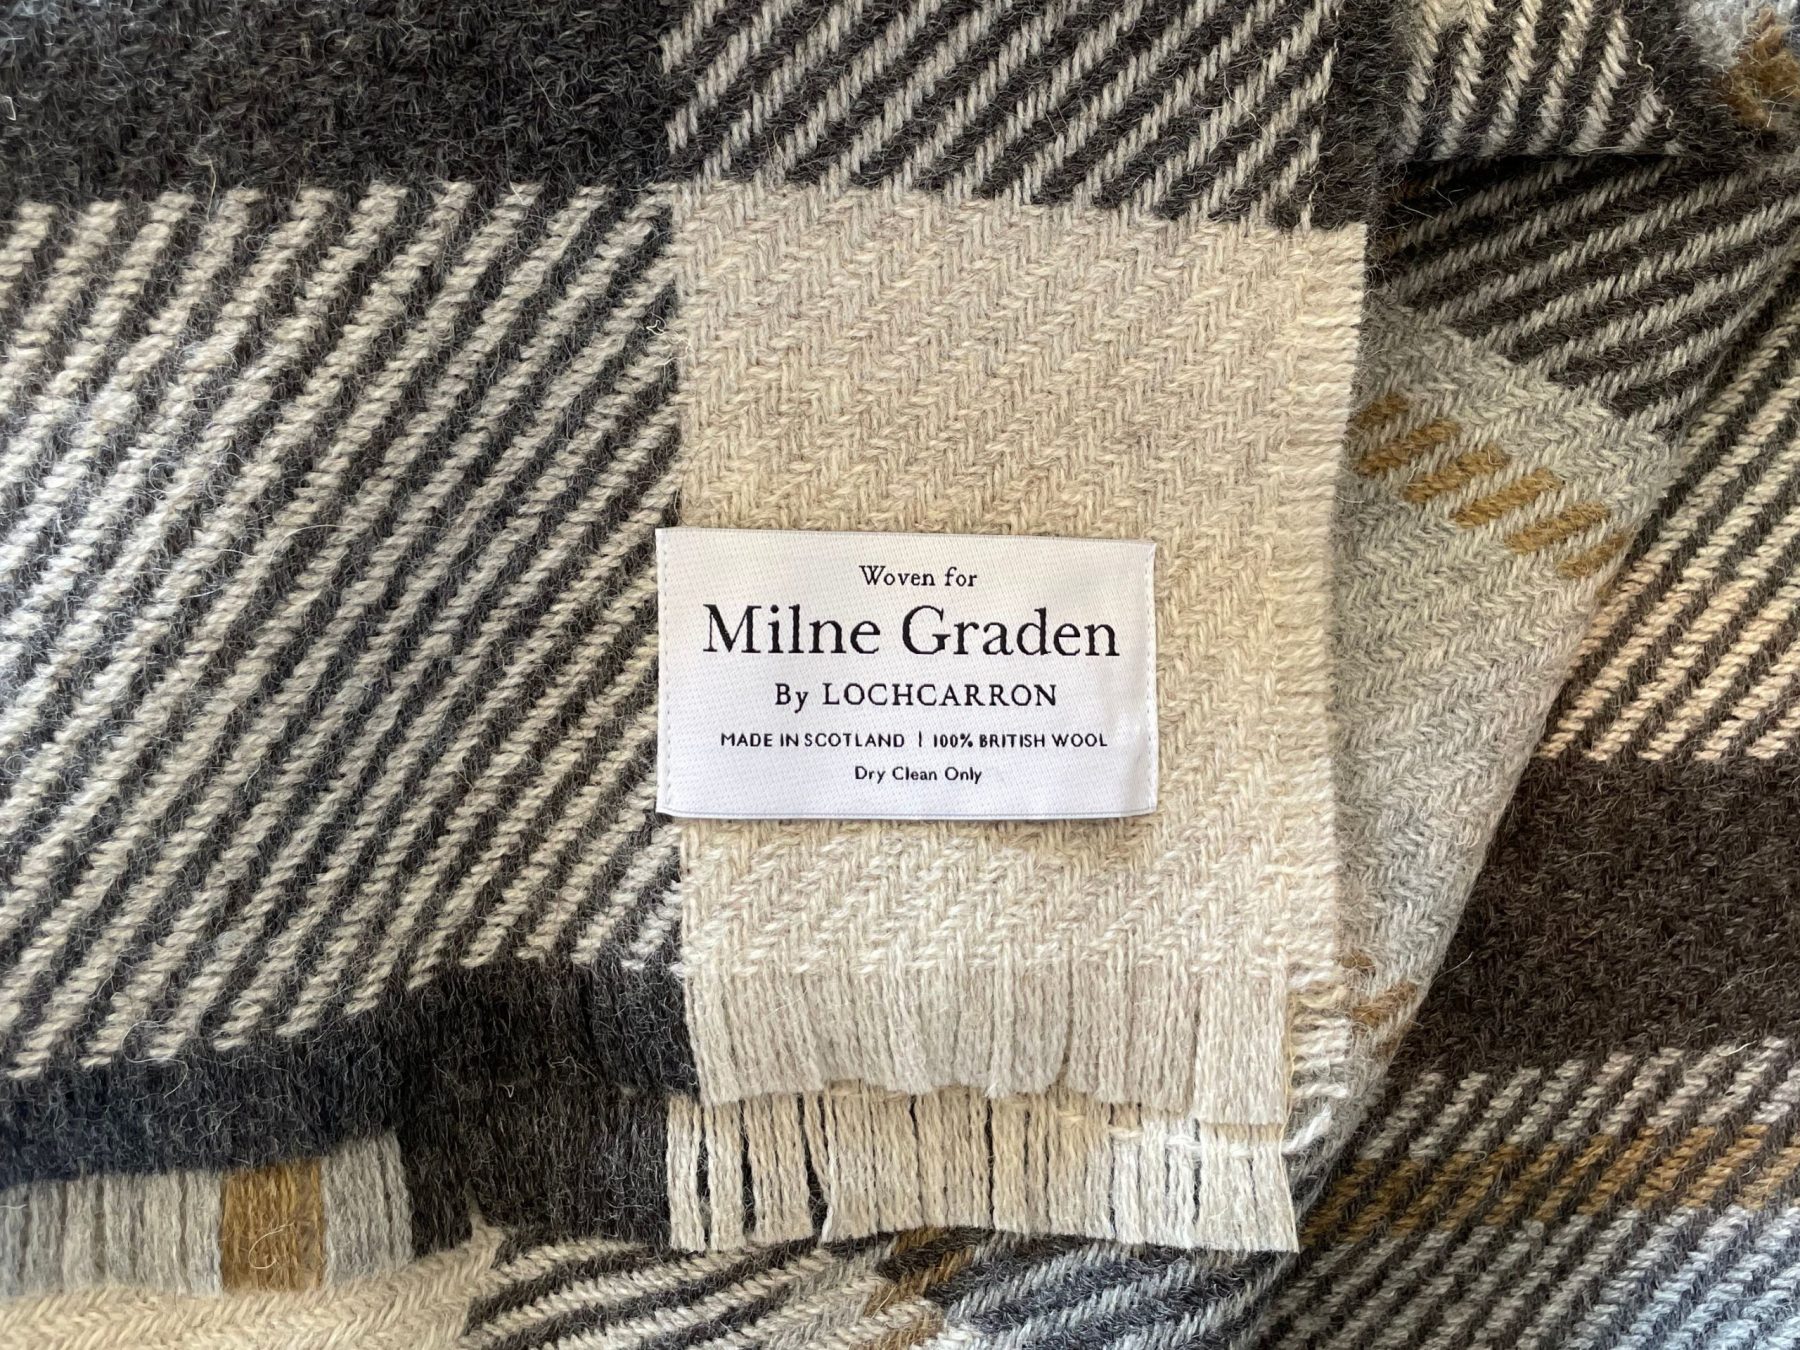 The Tales Behind the Milne Graden Tartan - Tales of the Tweed